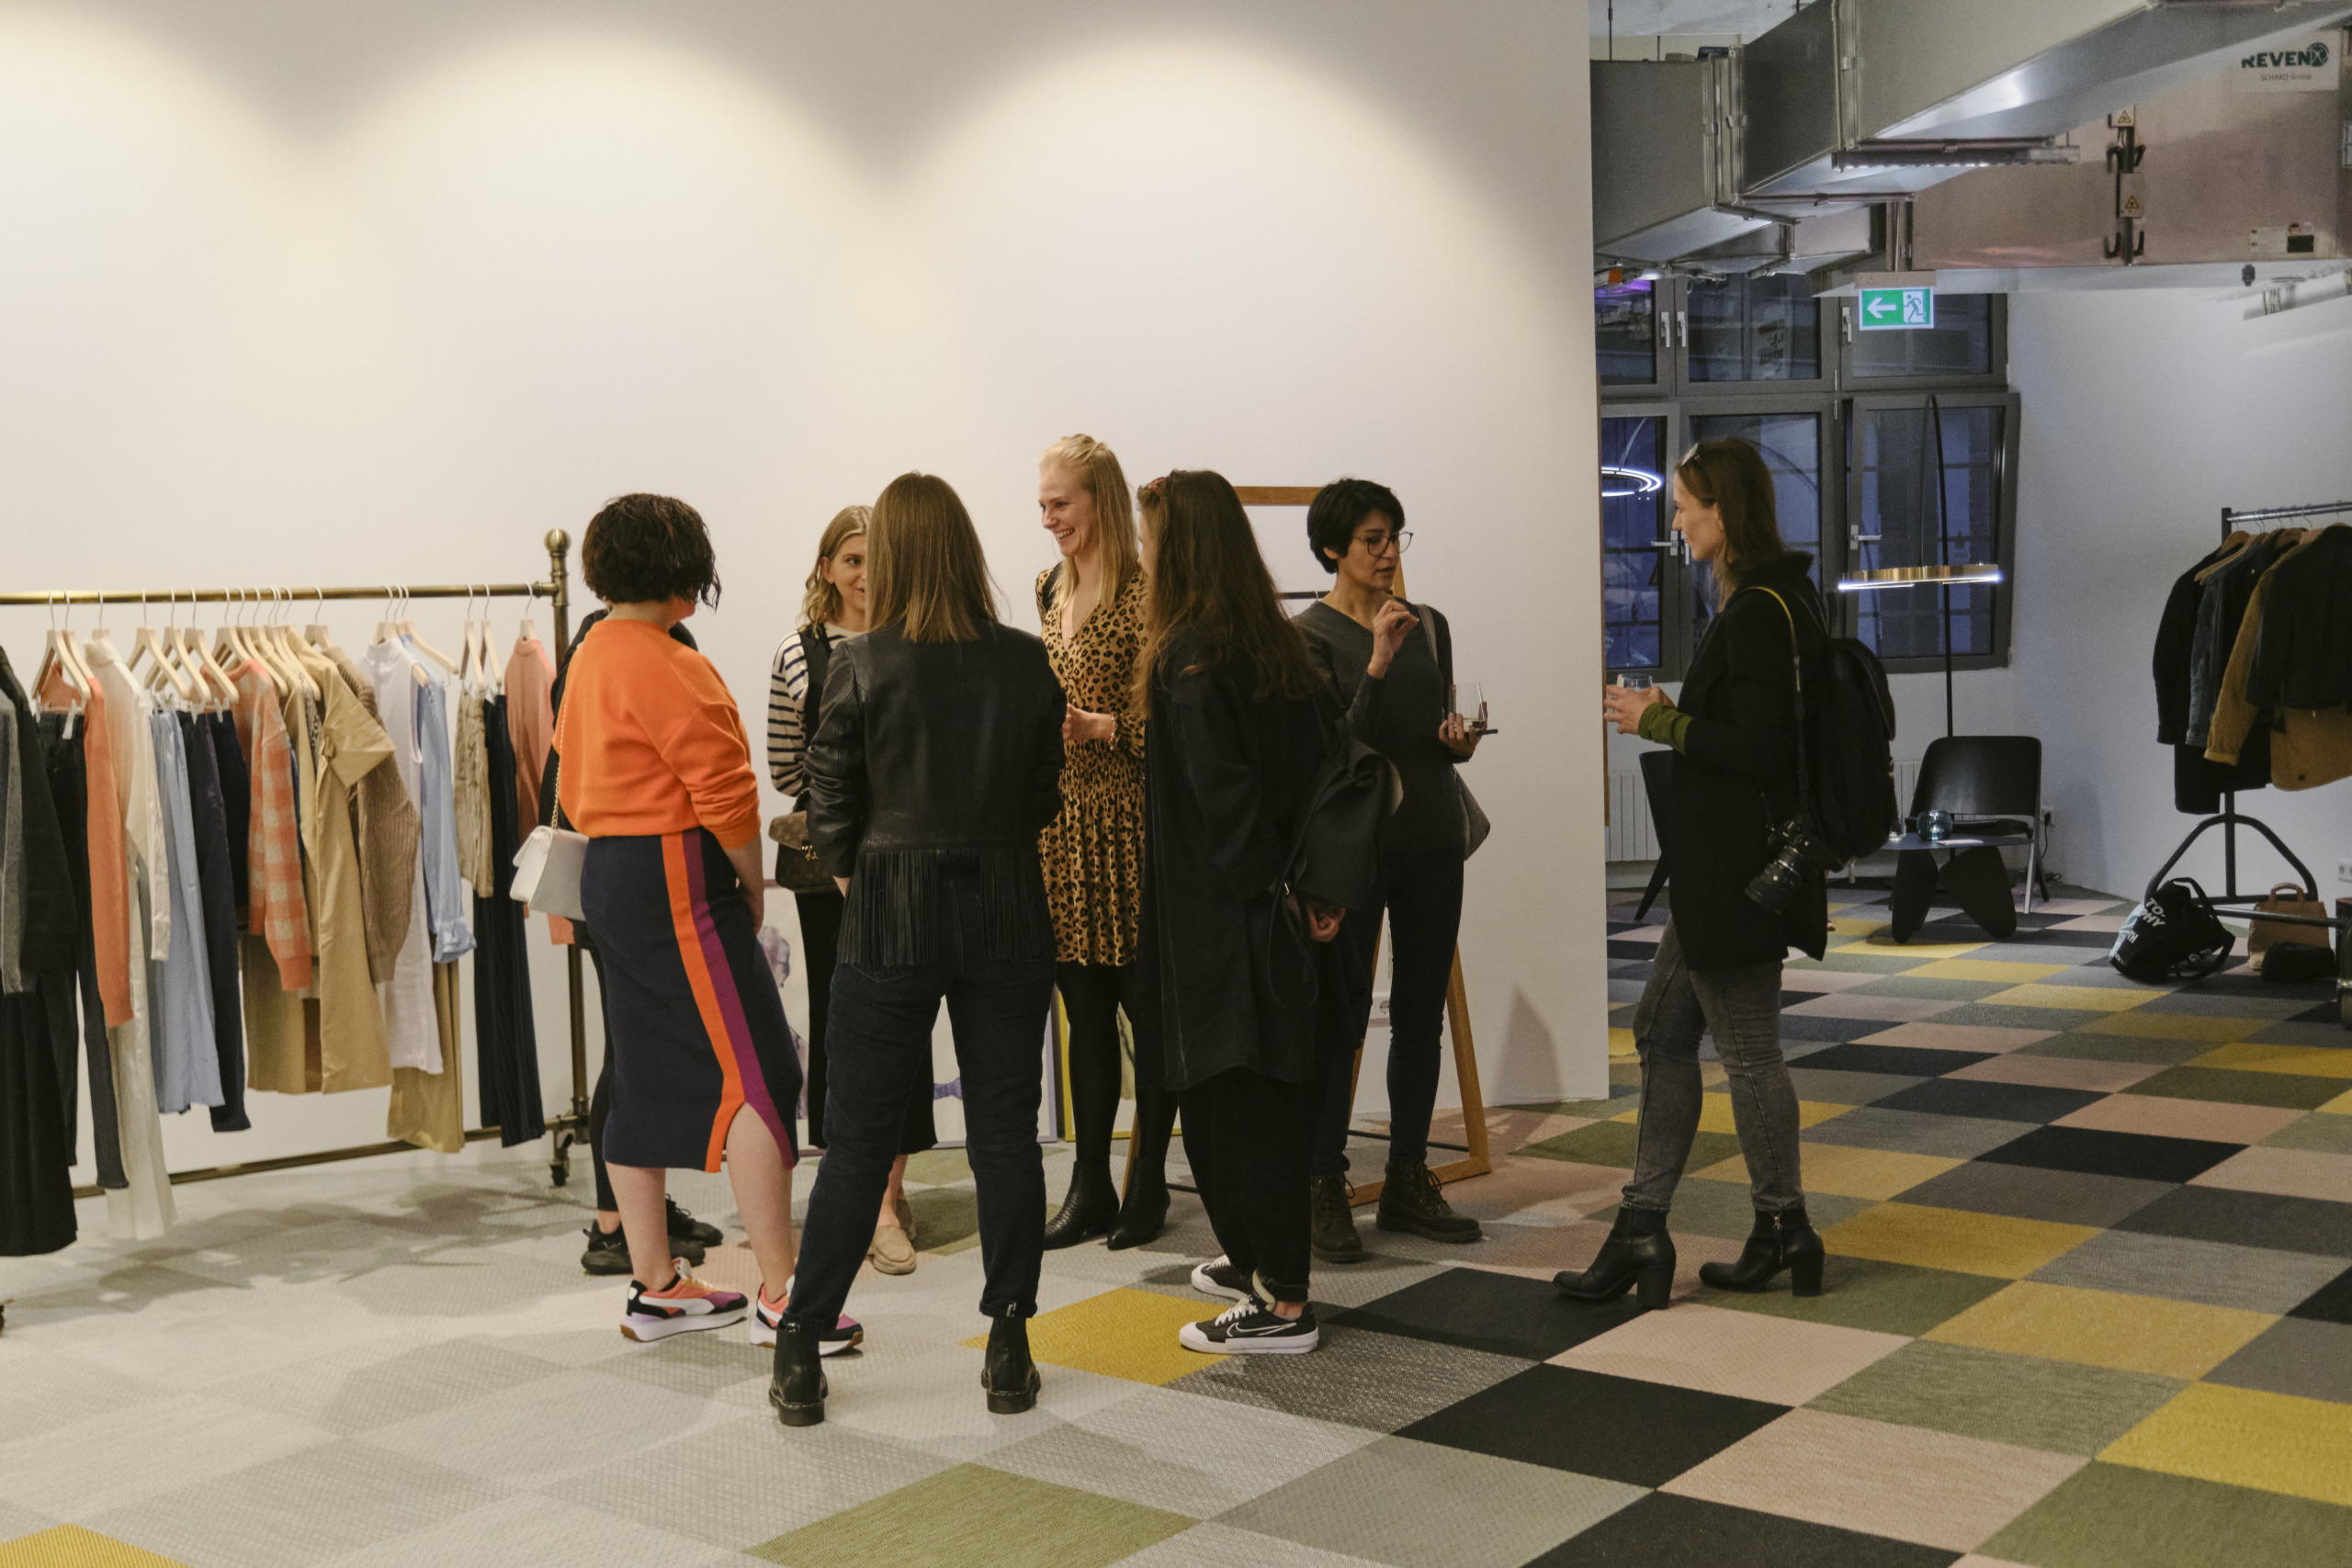 Міжнародне бізнес-ком’юніті для жінок Wtech відкрило свій осередок у Берліні